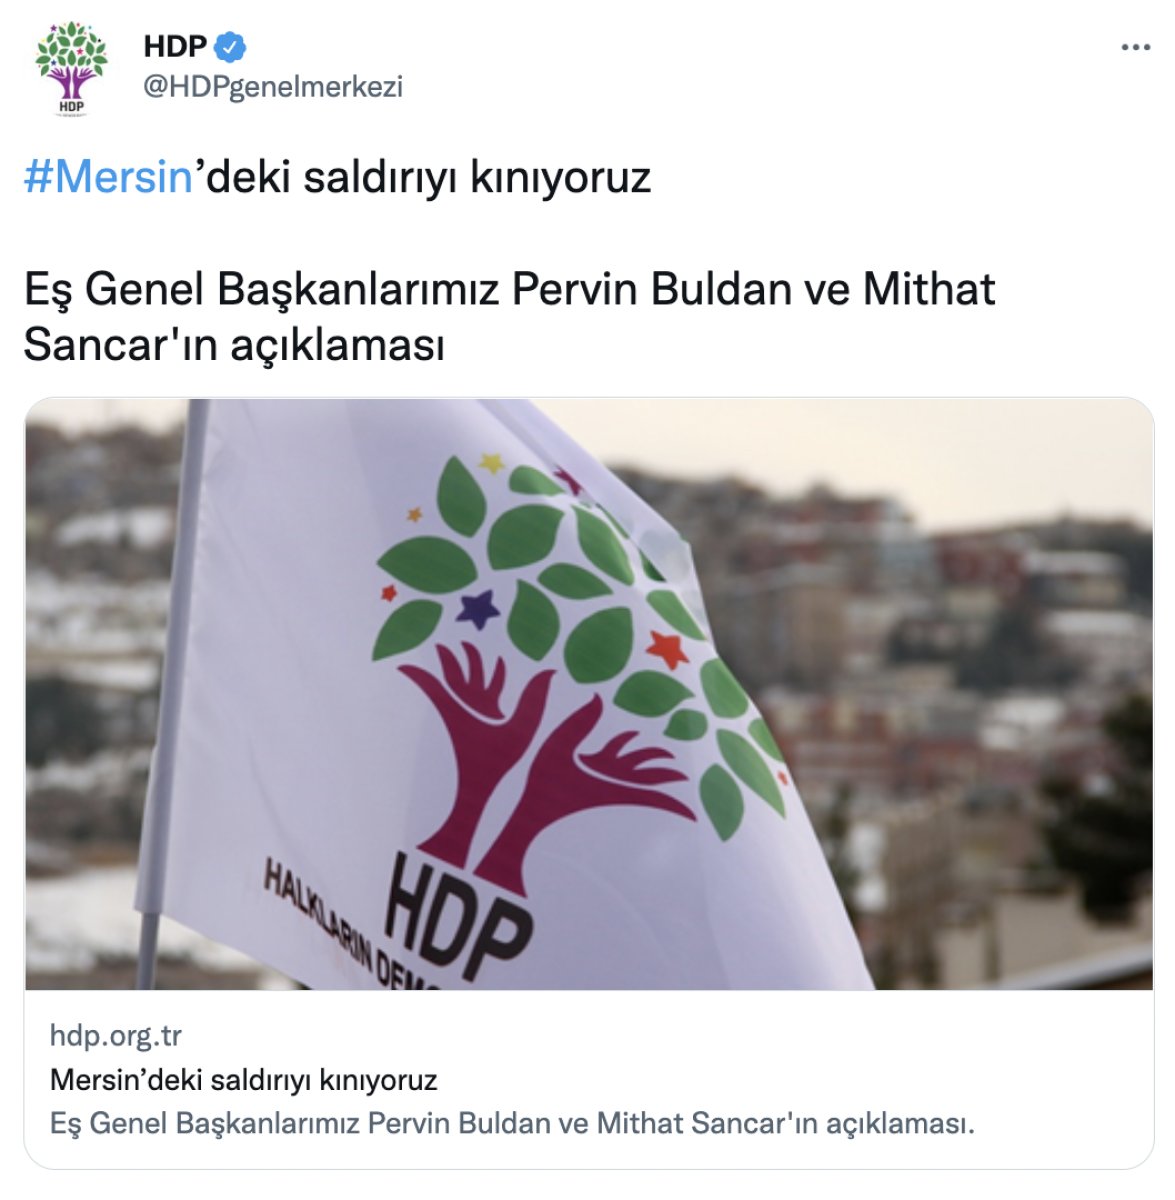 HDP den Mersin deki PKK saldırısına kınama #1